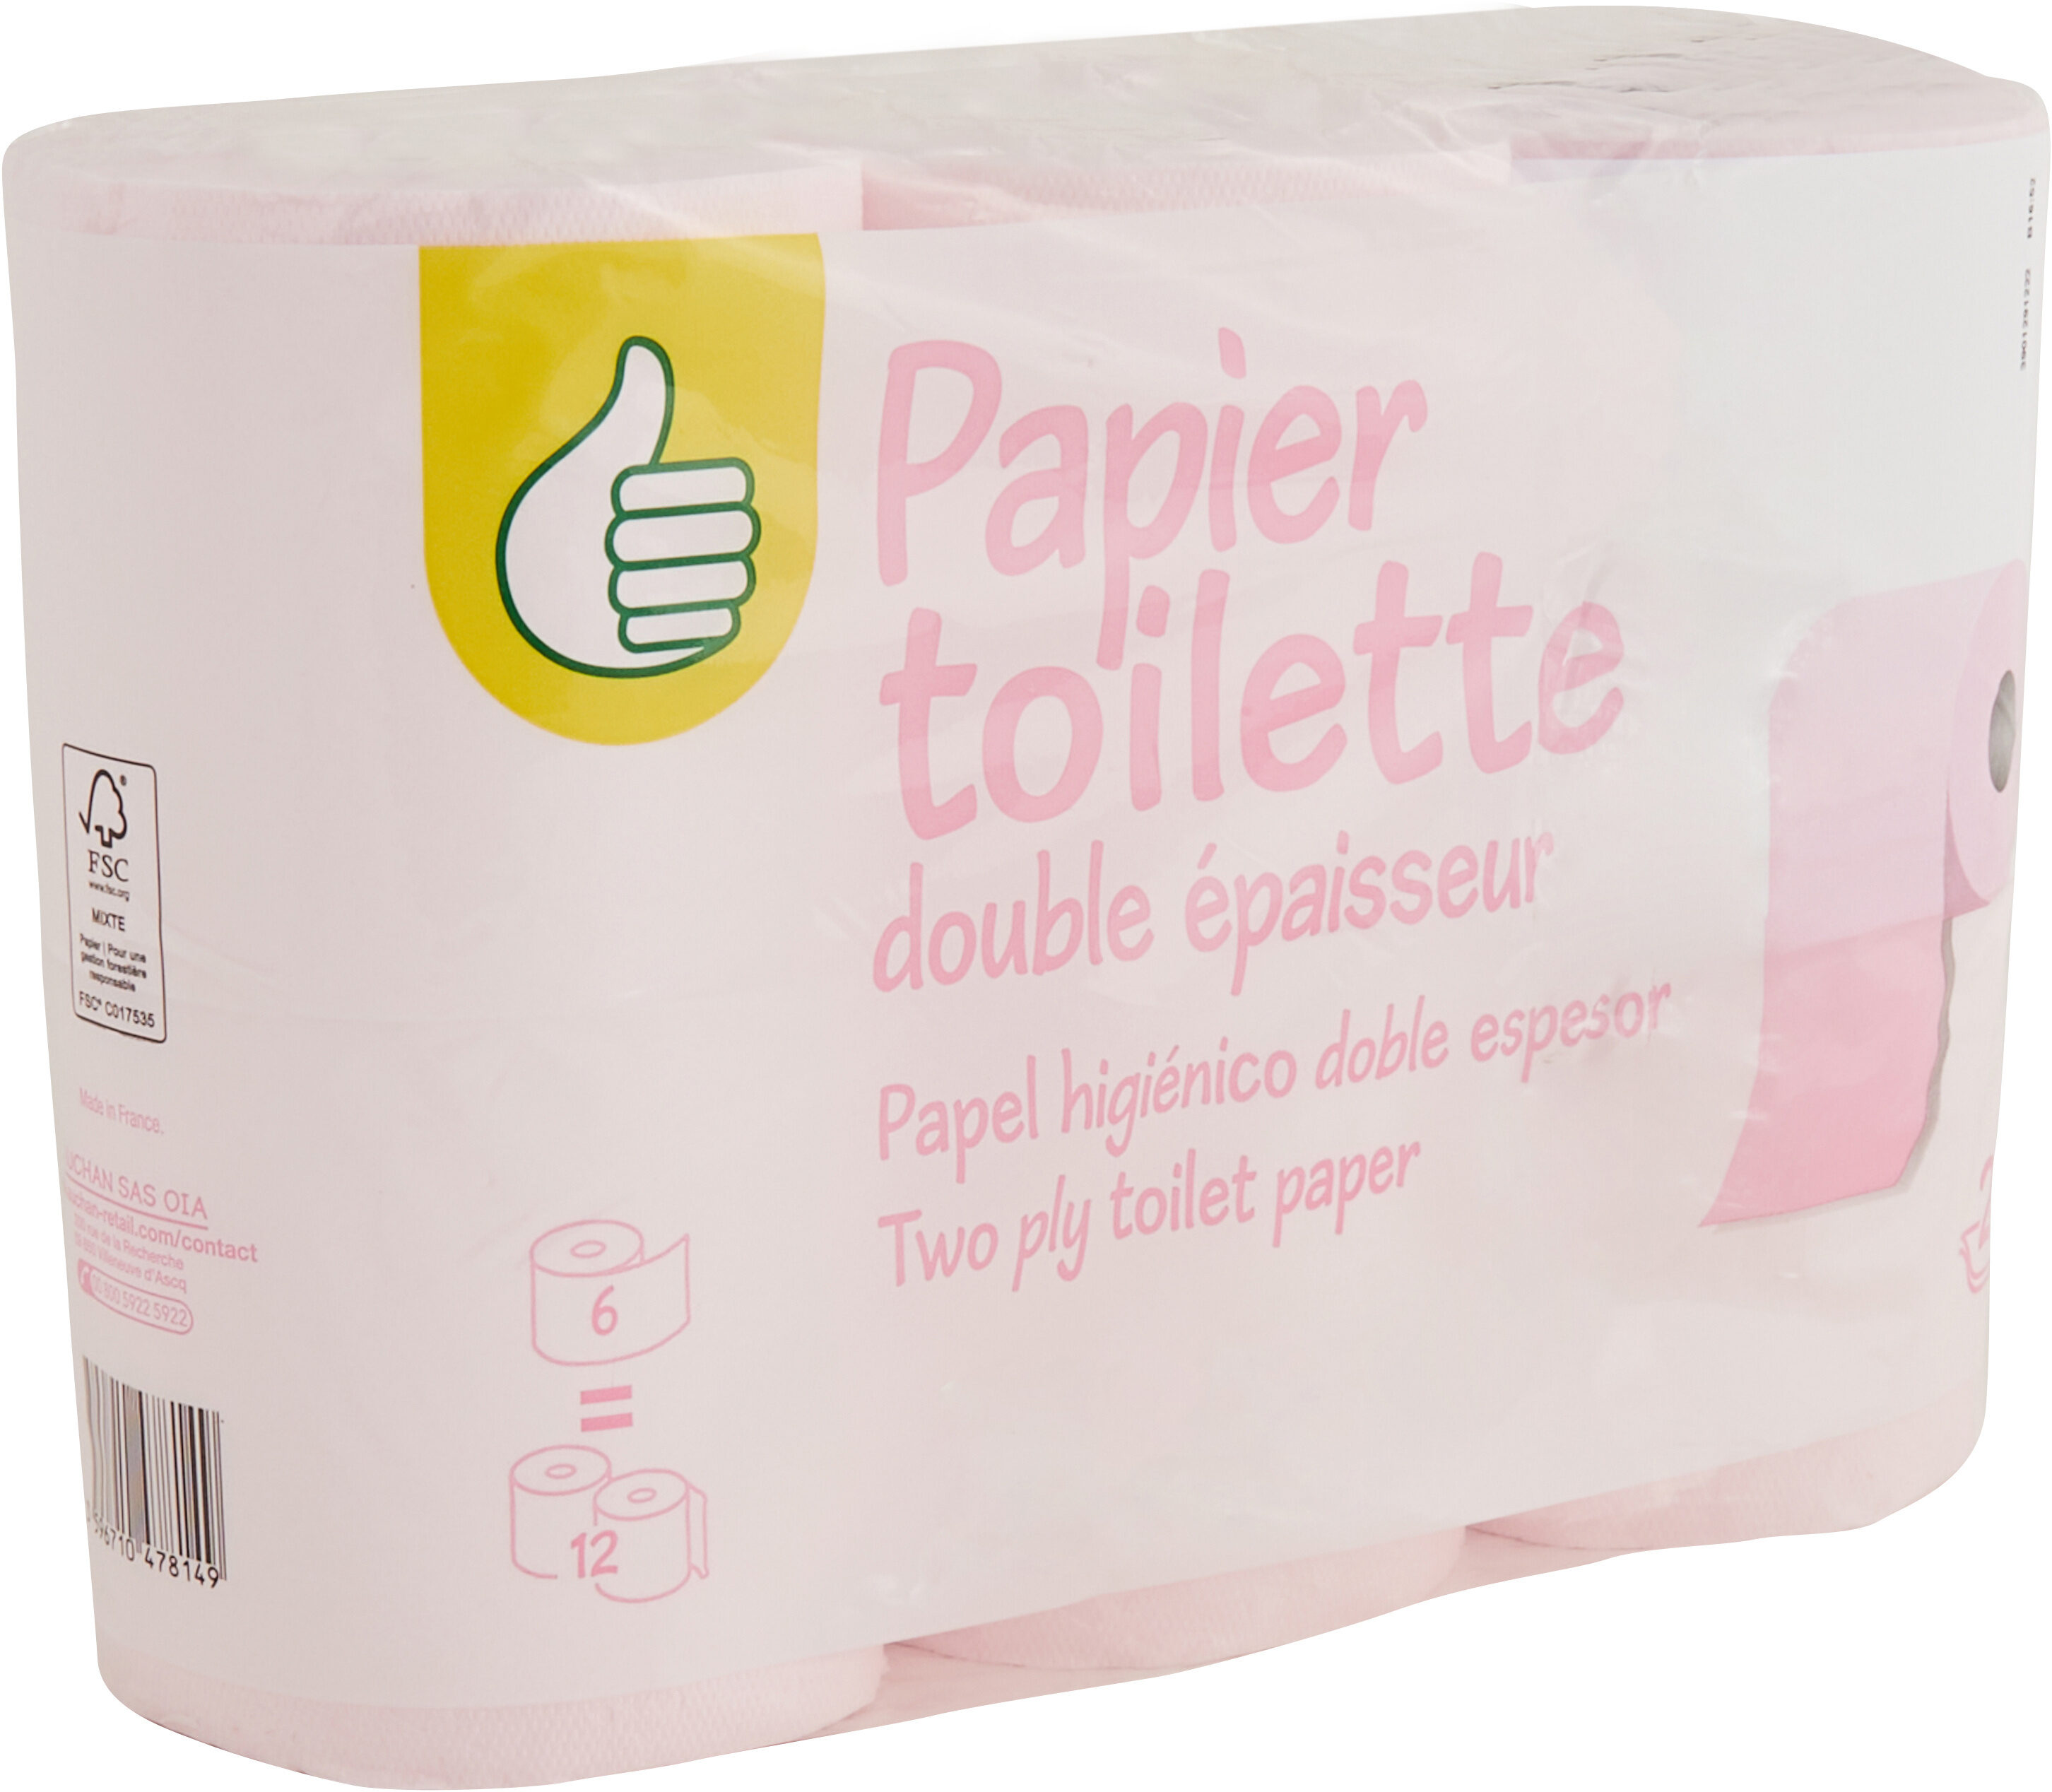 Papier toilette, 2plis - Produit - fr